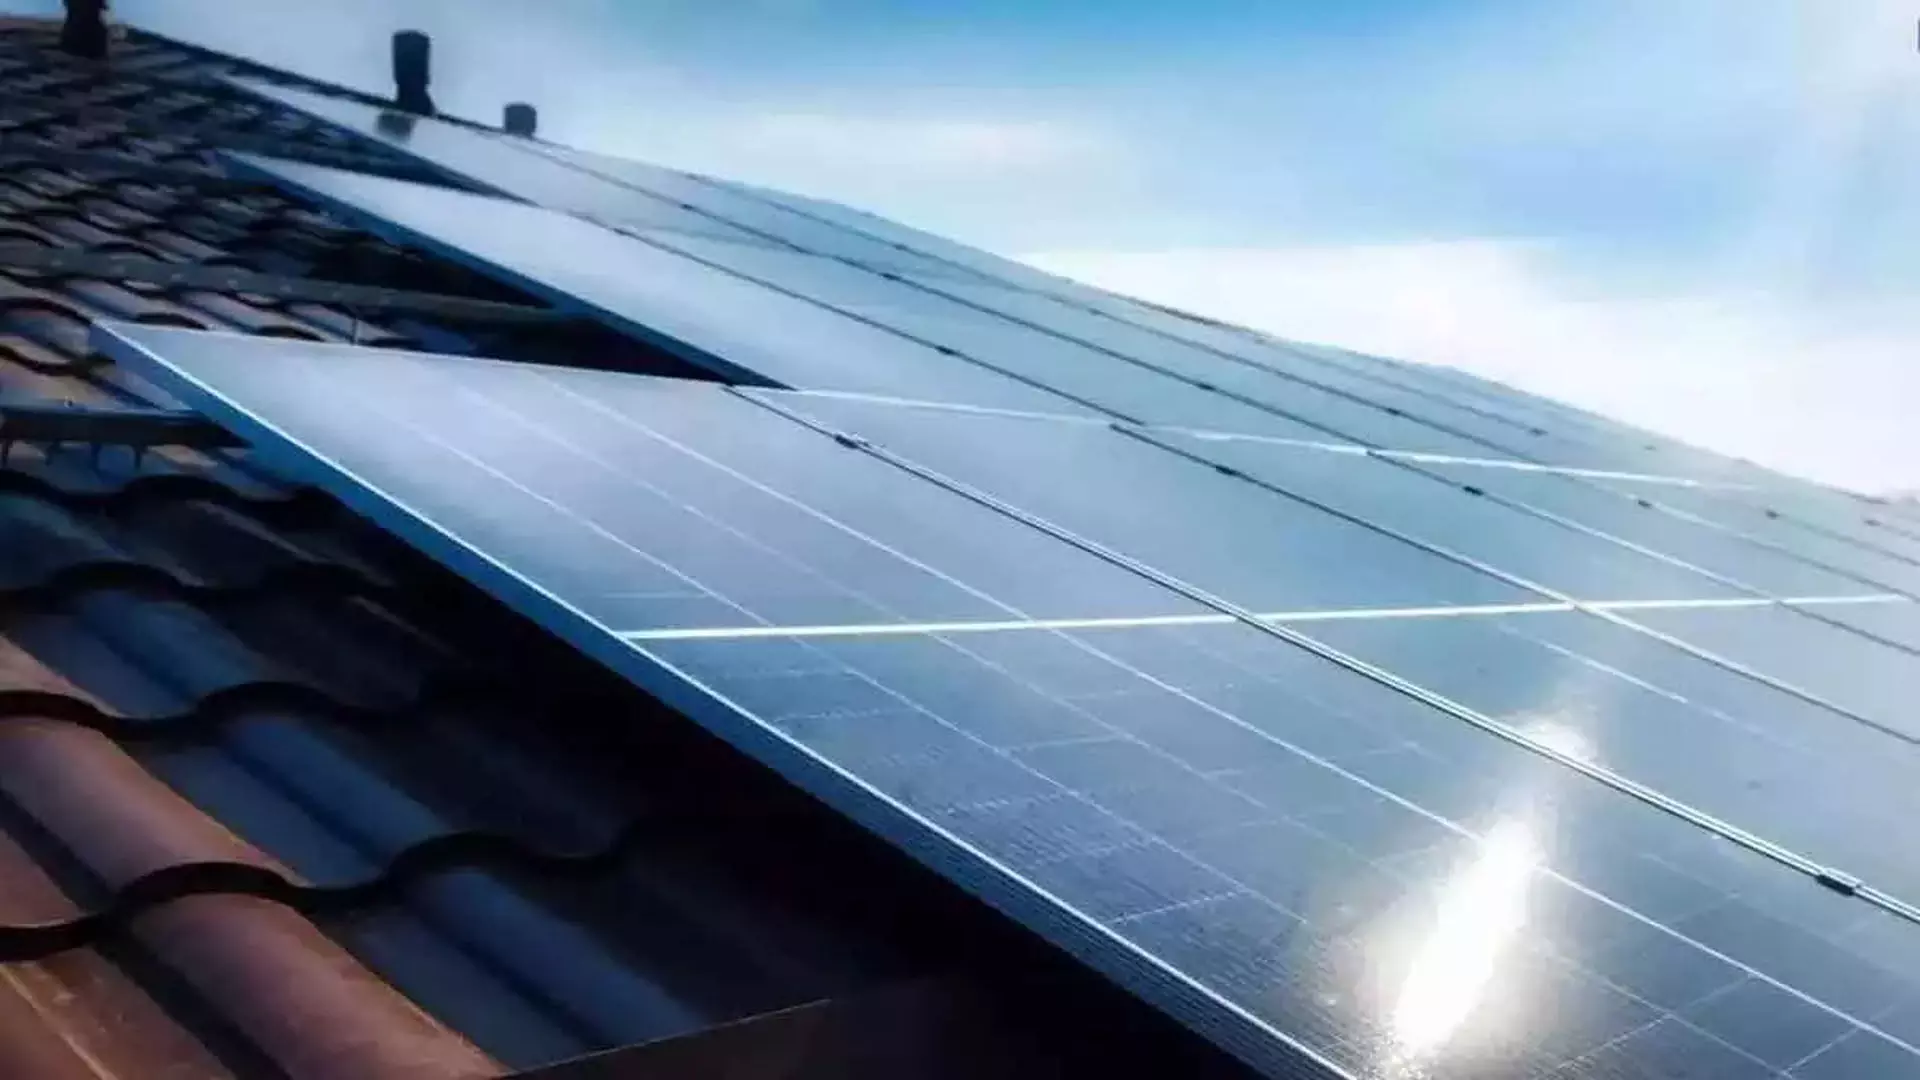 Solar energy का समर्थन करने में सब आगे, लेकिन कुछ ही ने लगाया पैनल